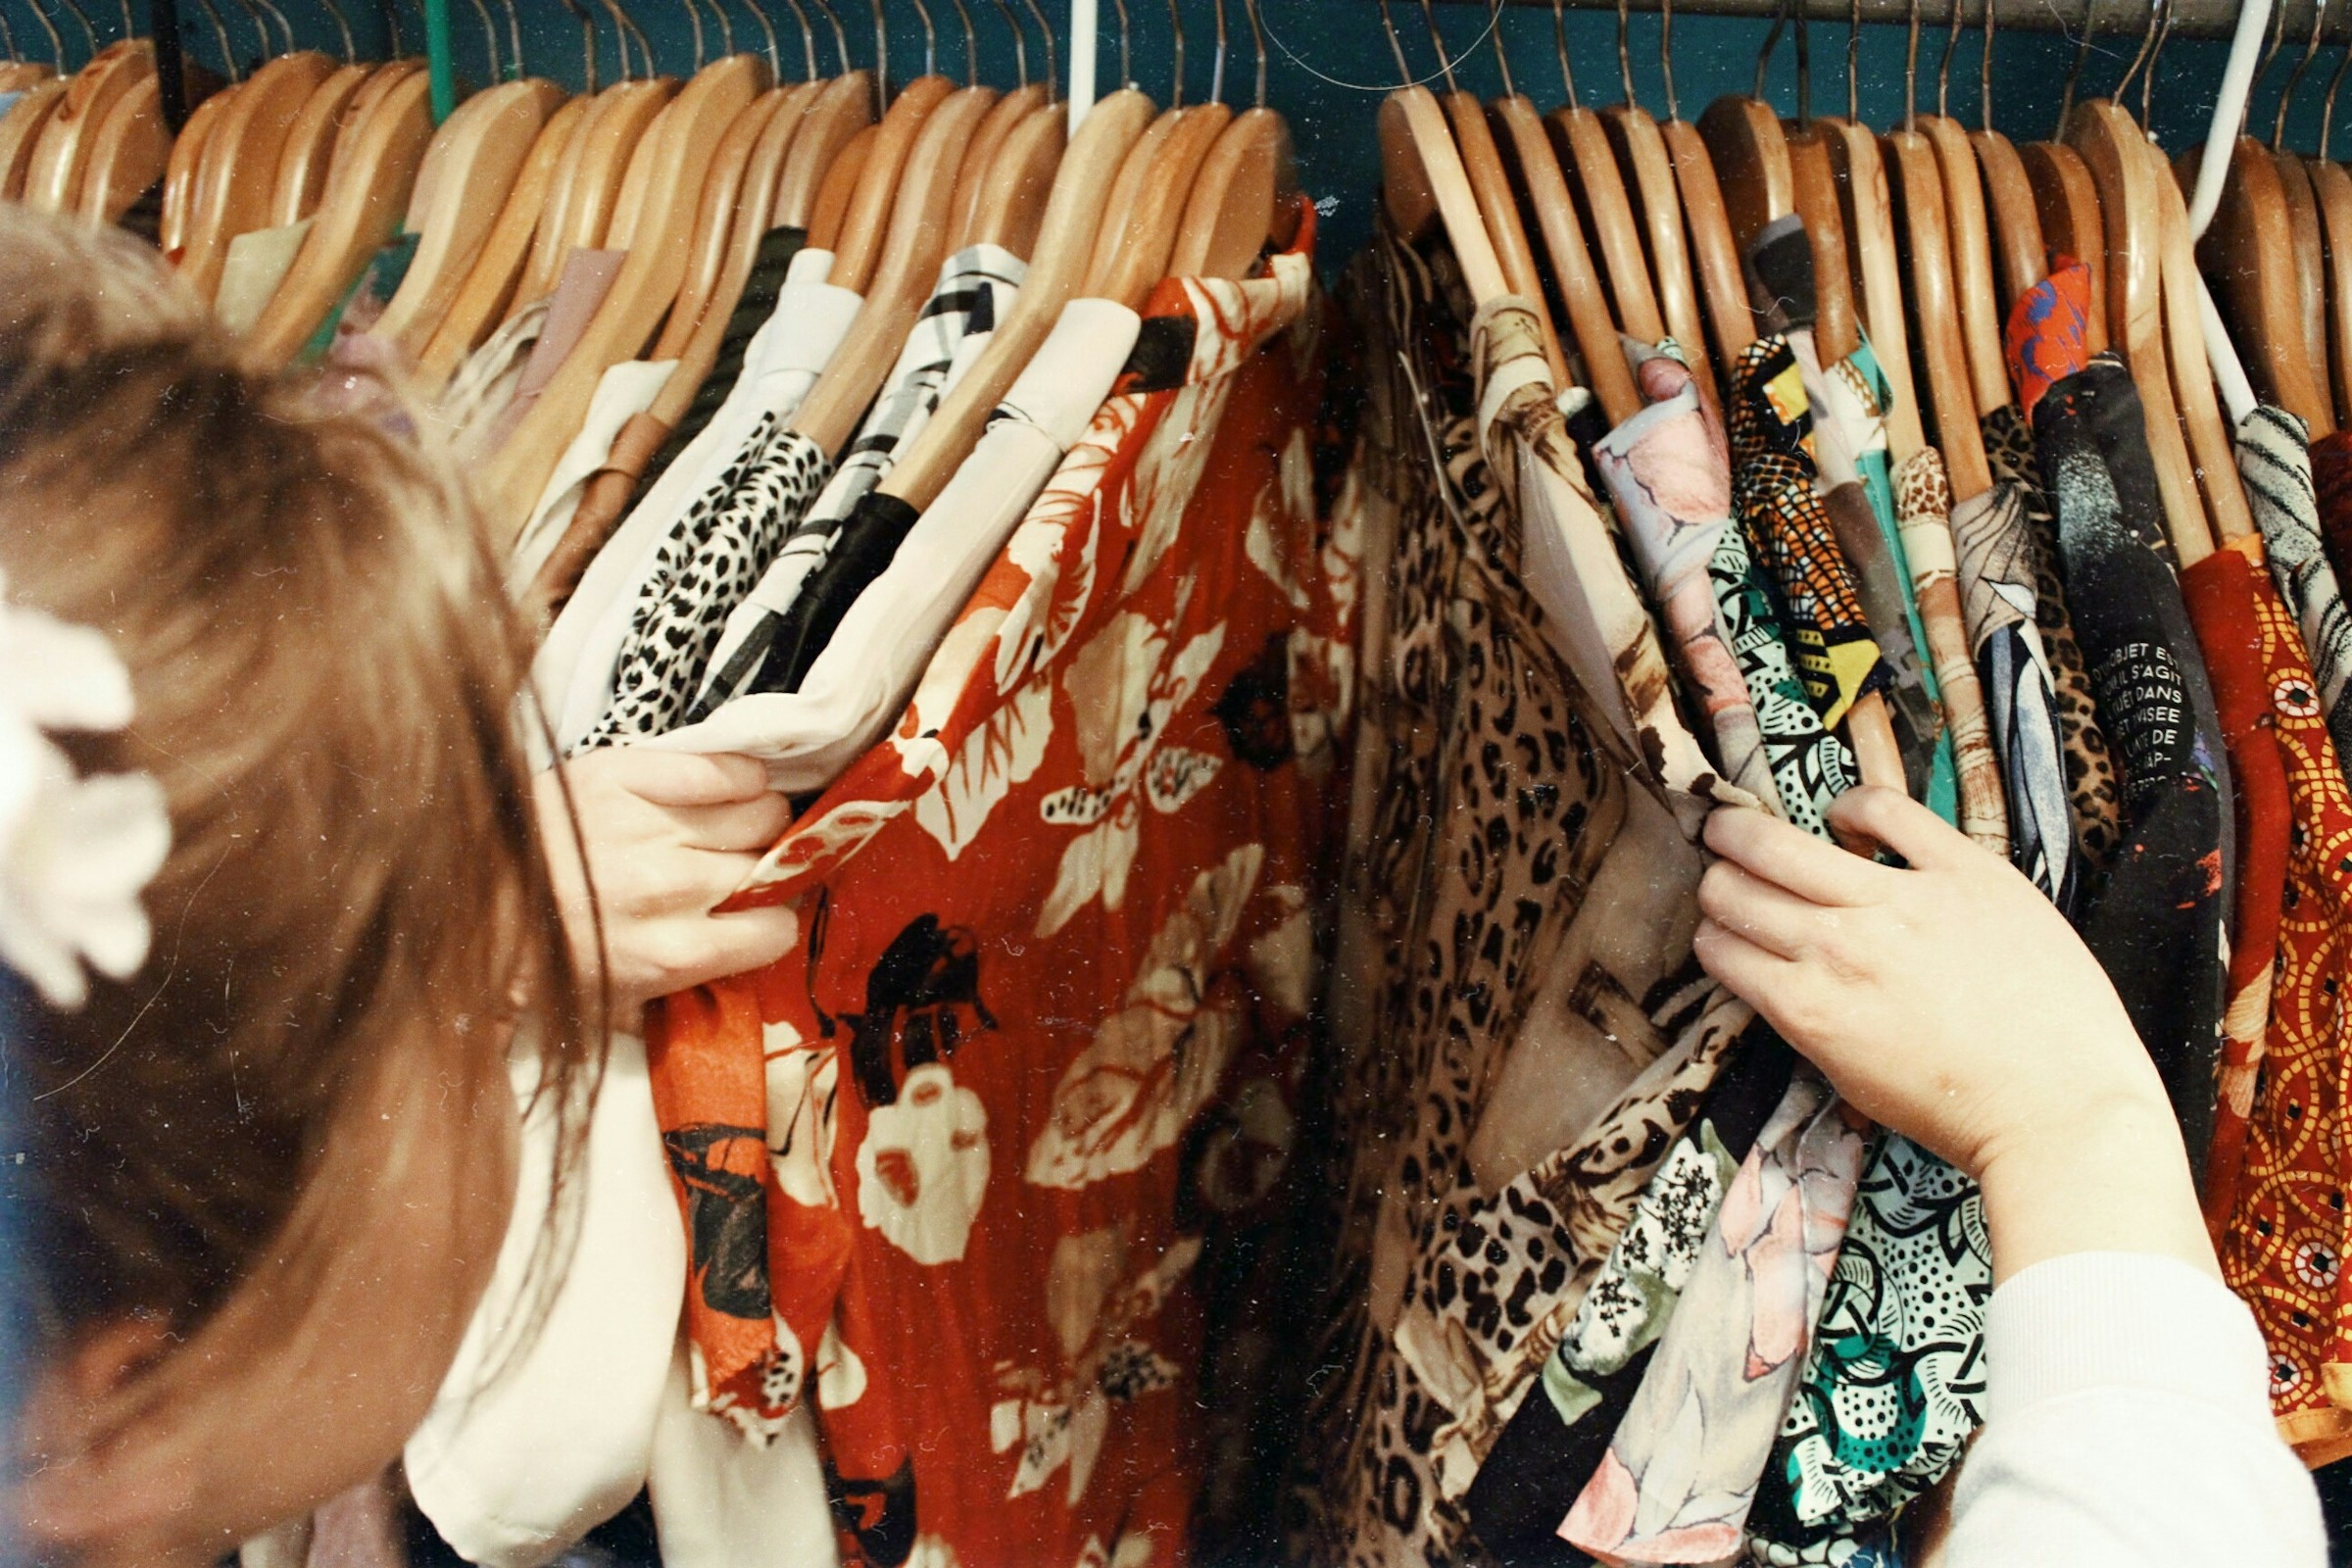 Une femme qui fait du shopping de robes | Source : Unsplash